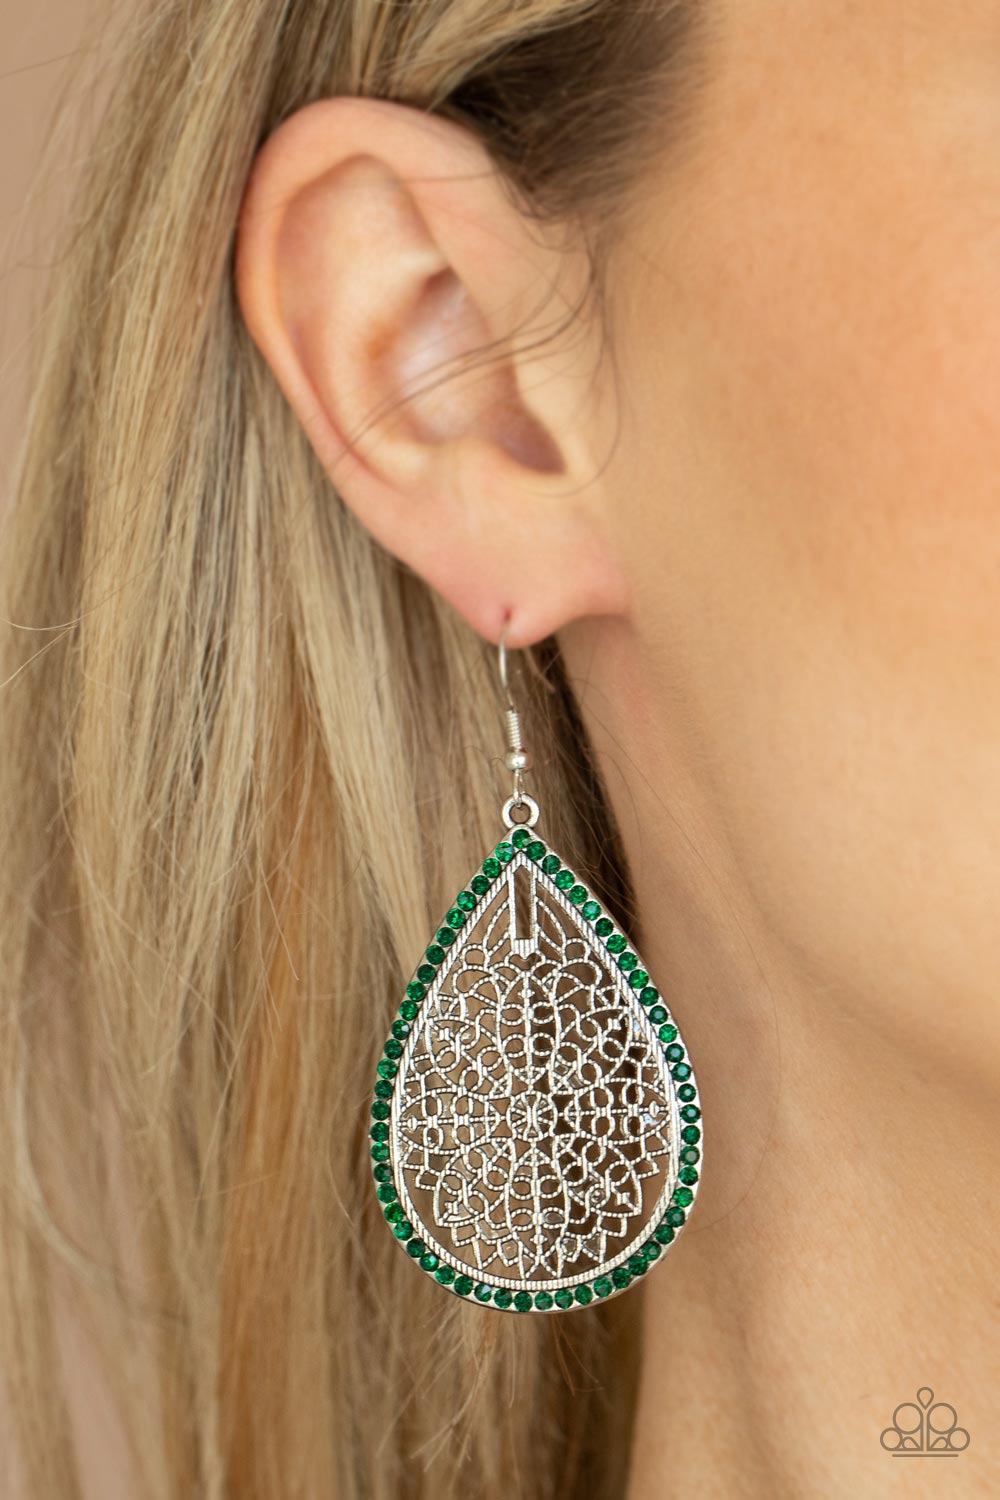 PRE-ORDER - Paparazzi Fleur de Fantasy - Green - Earrings - $5 Jewelry with Ashley Swint